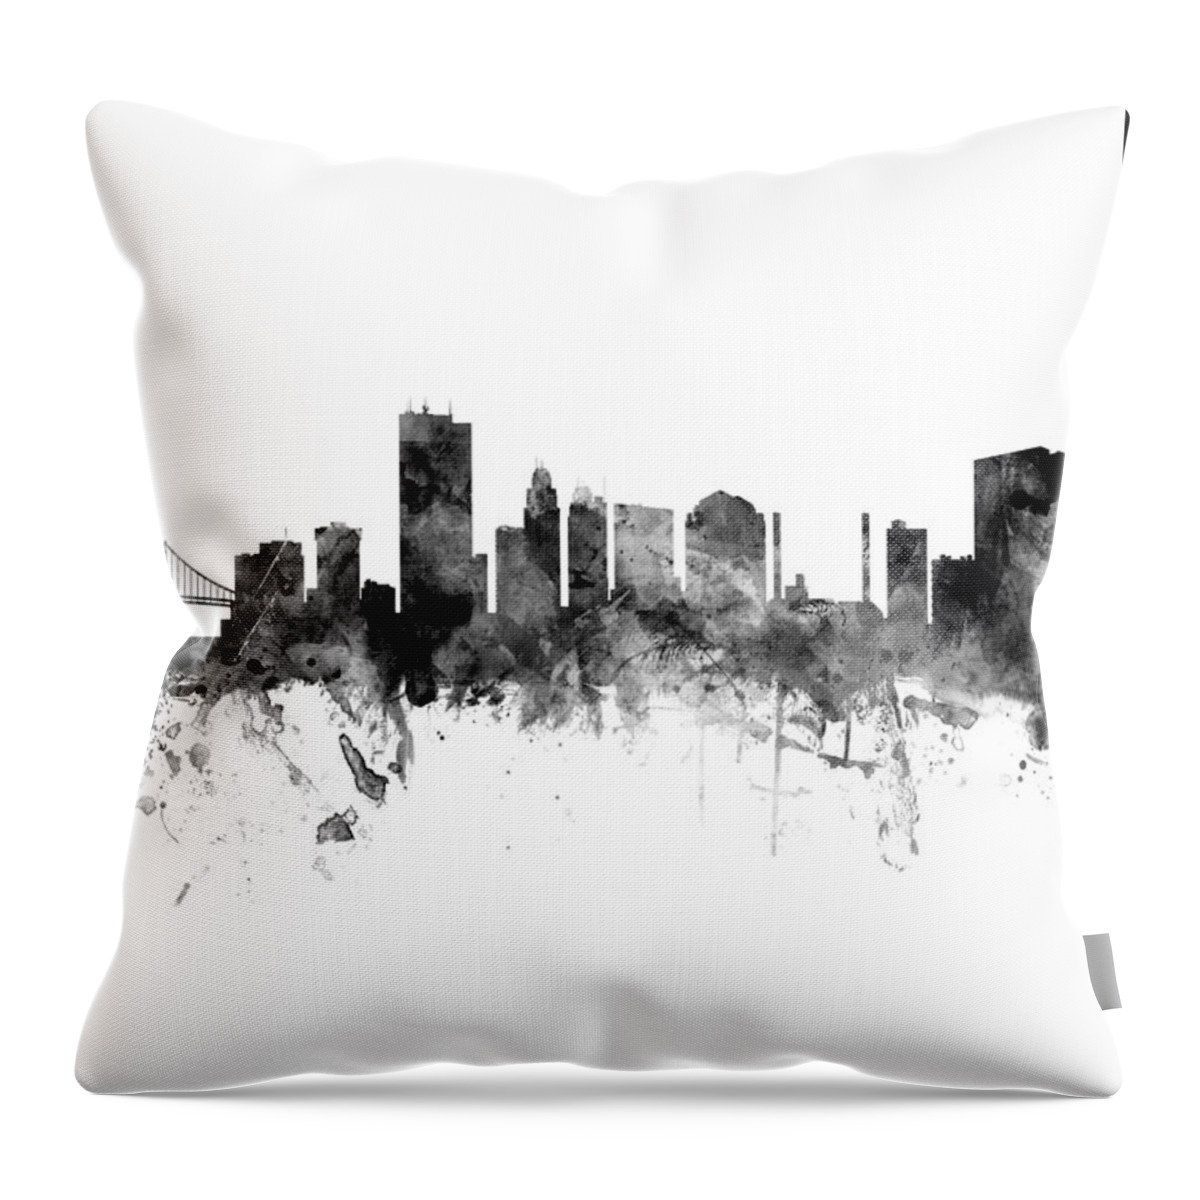 Toledo Throw Pillow featuring the digital art Toledo Ohio Skyline #20 by Michael Tompsett